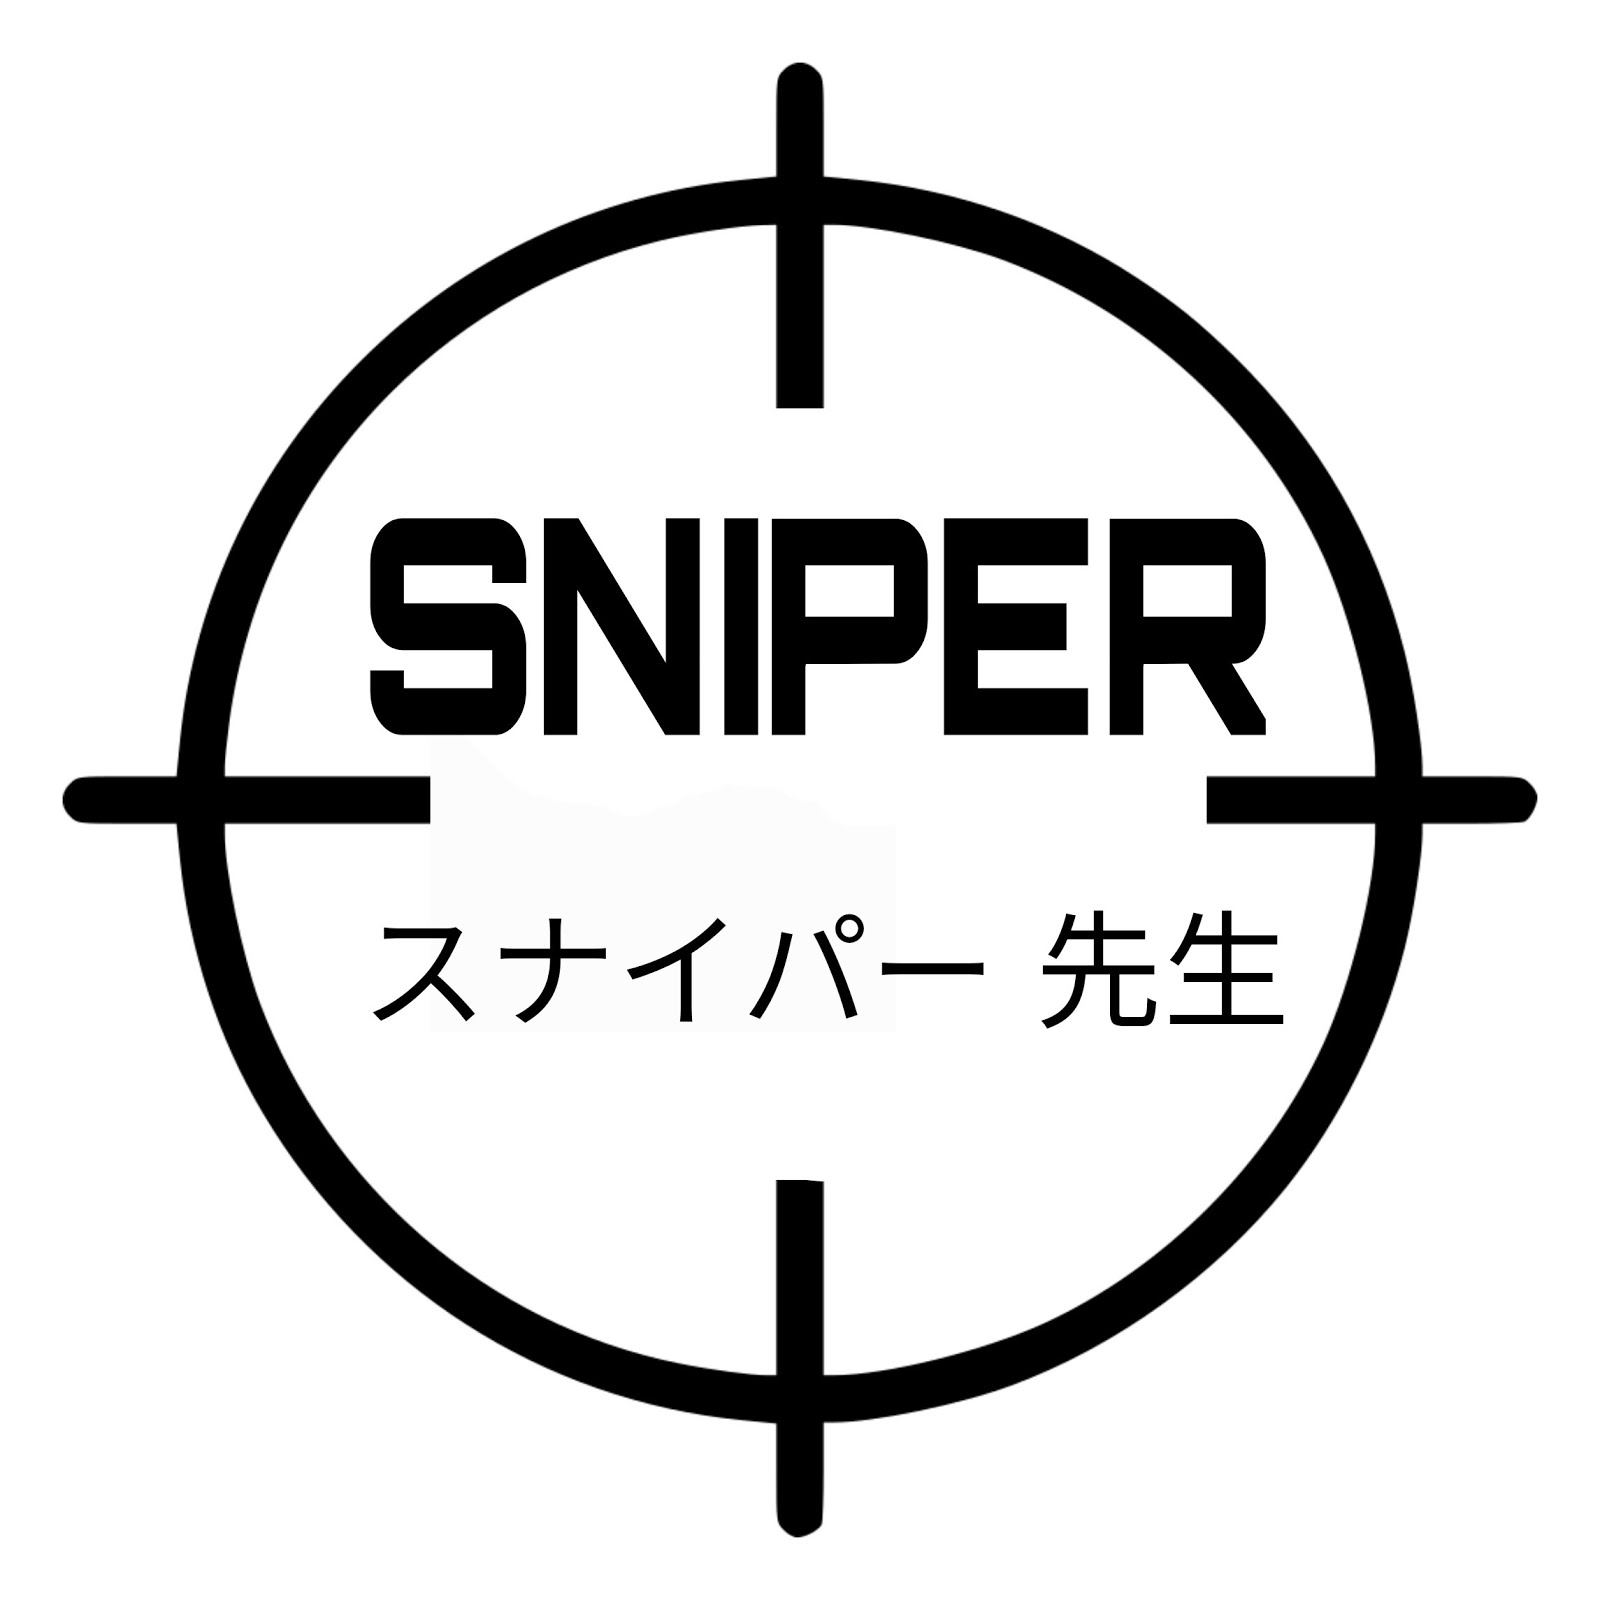 Sniper_sensei